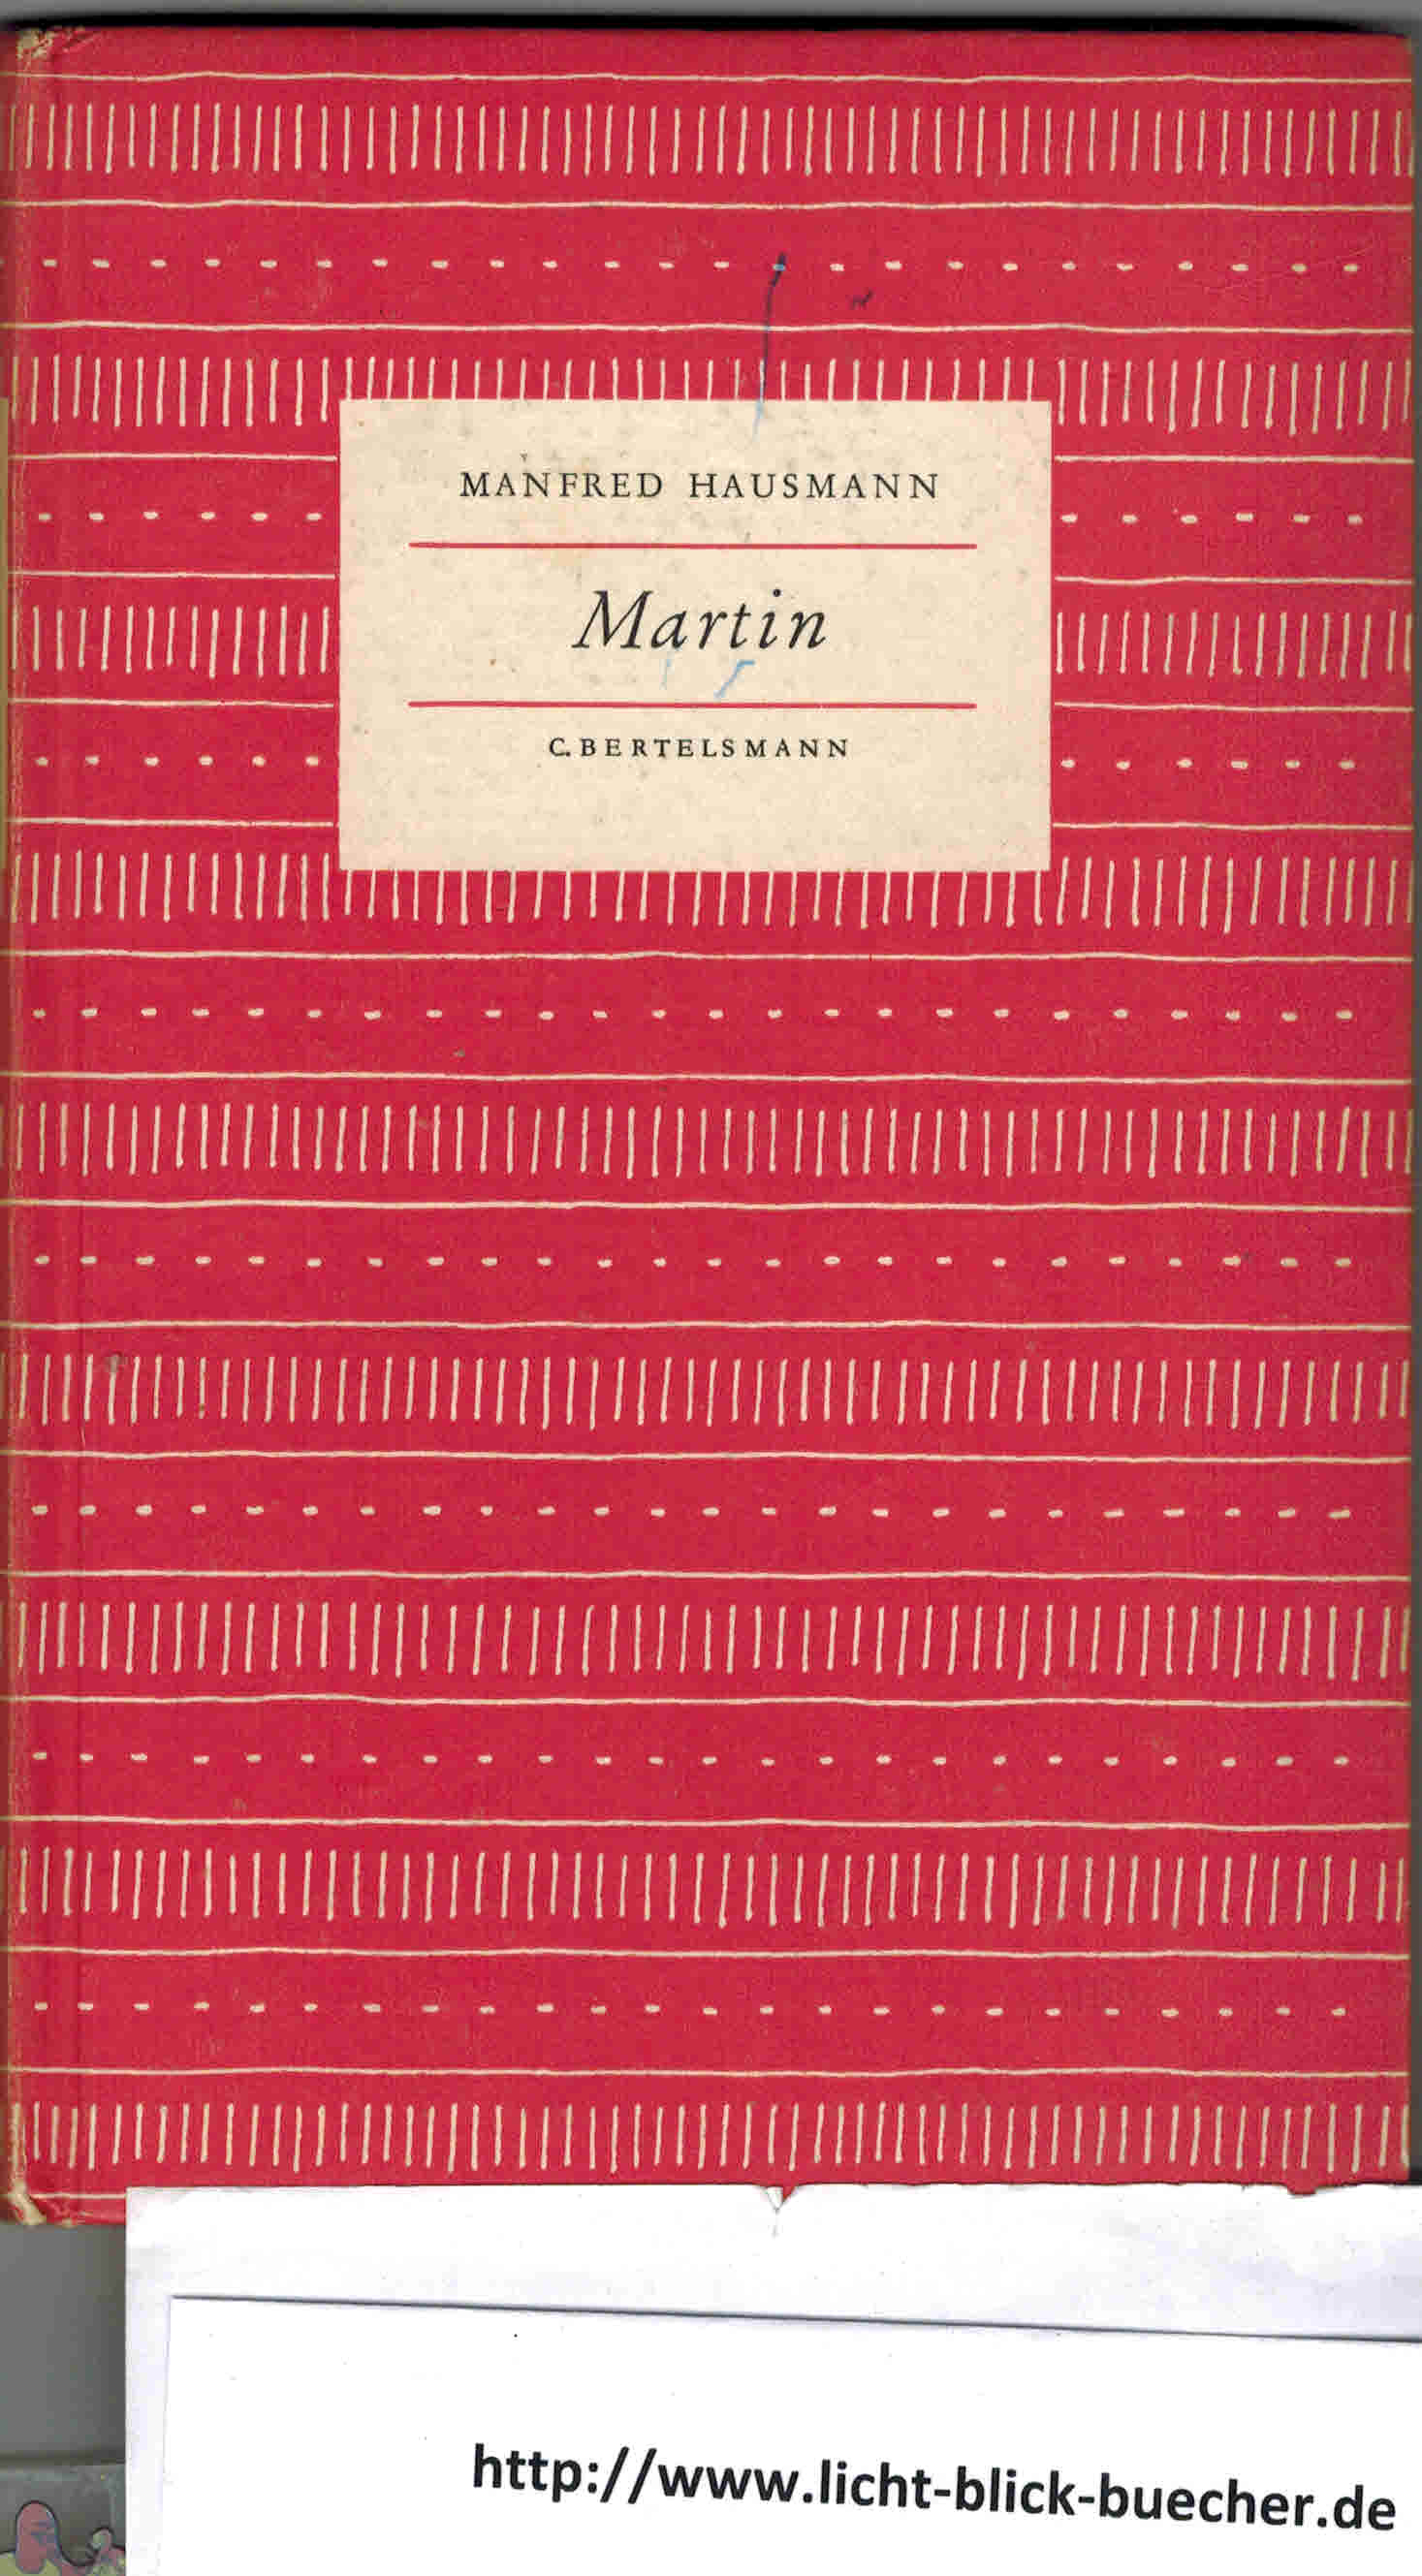 Martin - Geschichten aus einer gluecklichen WeltManfred Hausmann ( Das kleine Buch 32 )